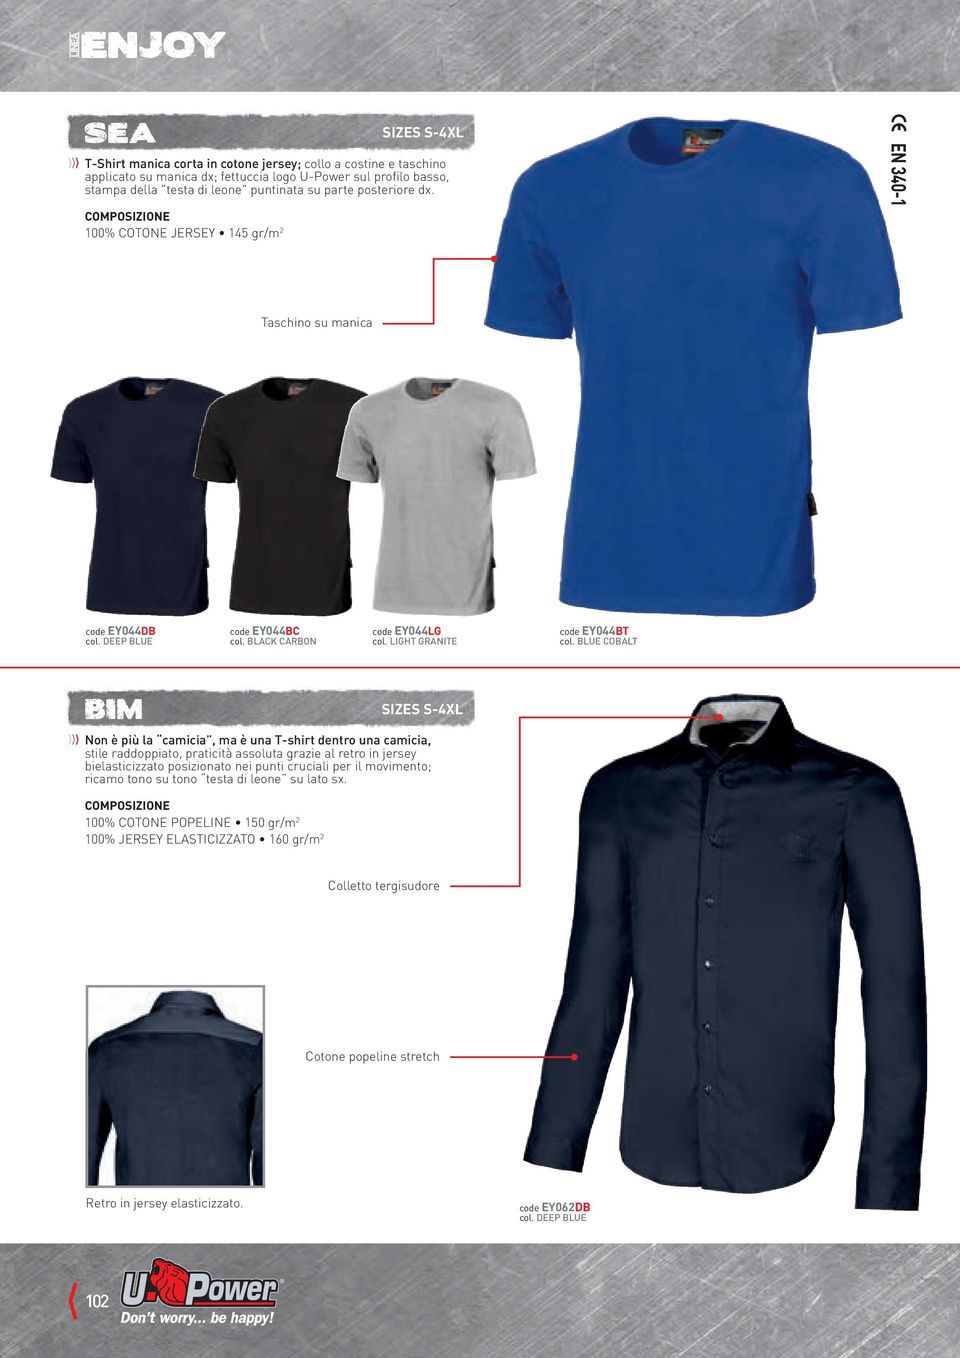 blue cobalt bim non è più la camicia, ma è una T-shirt dentro una camicia, stile raddoppiato, praticità assoluta grazie al retro in jersey bielasticizzato posizionato nei punti cruciali per il